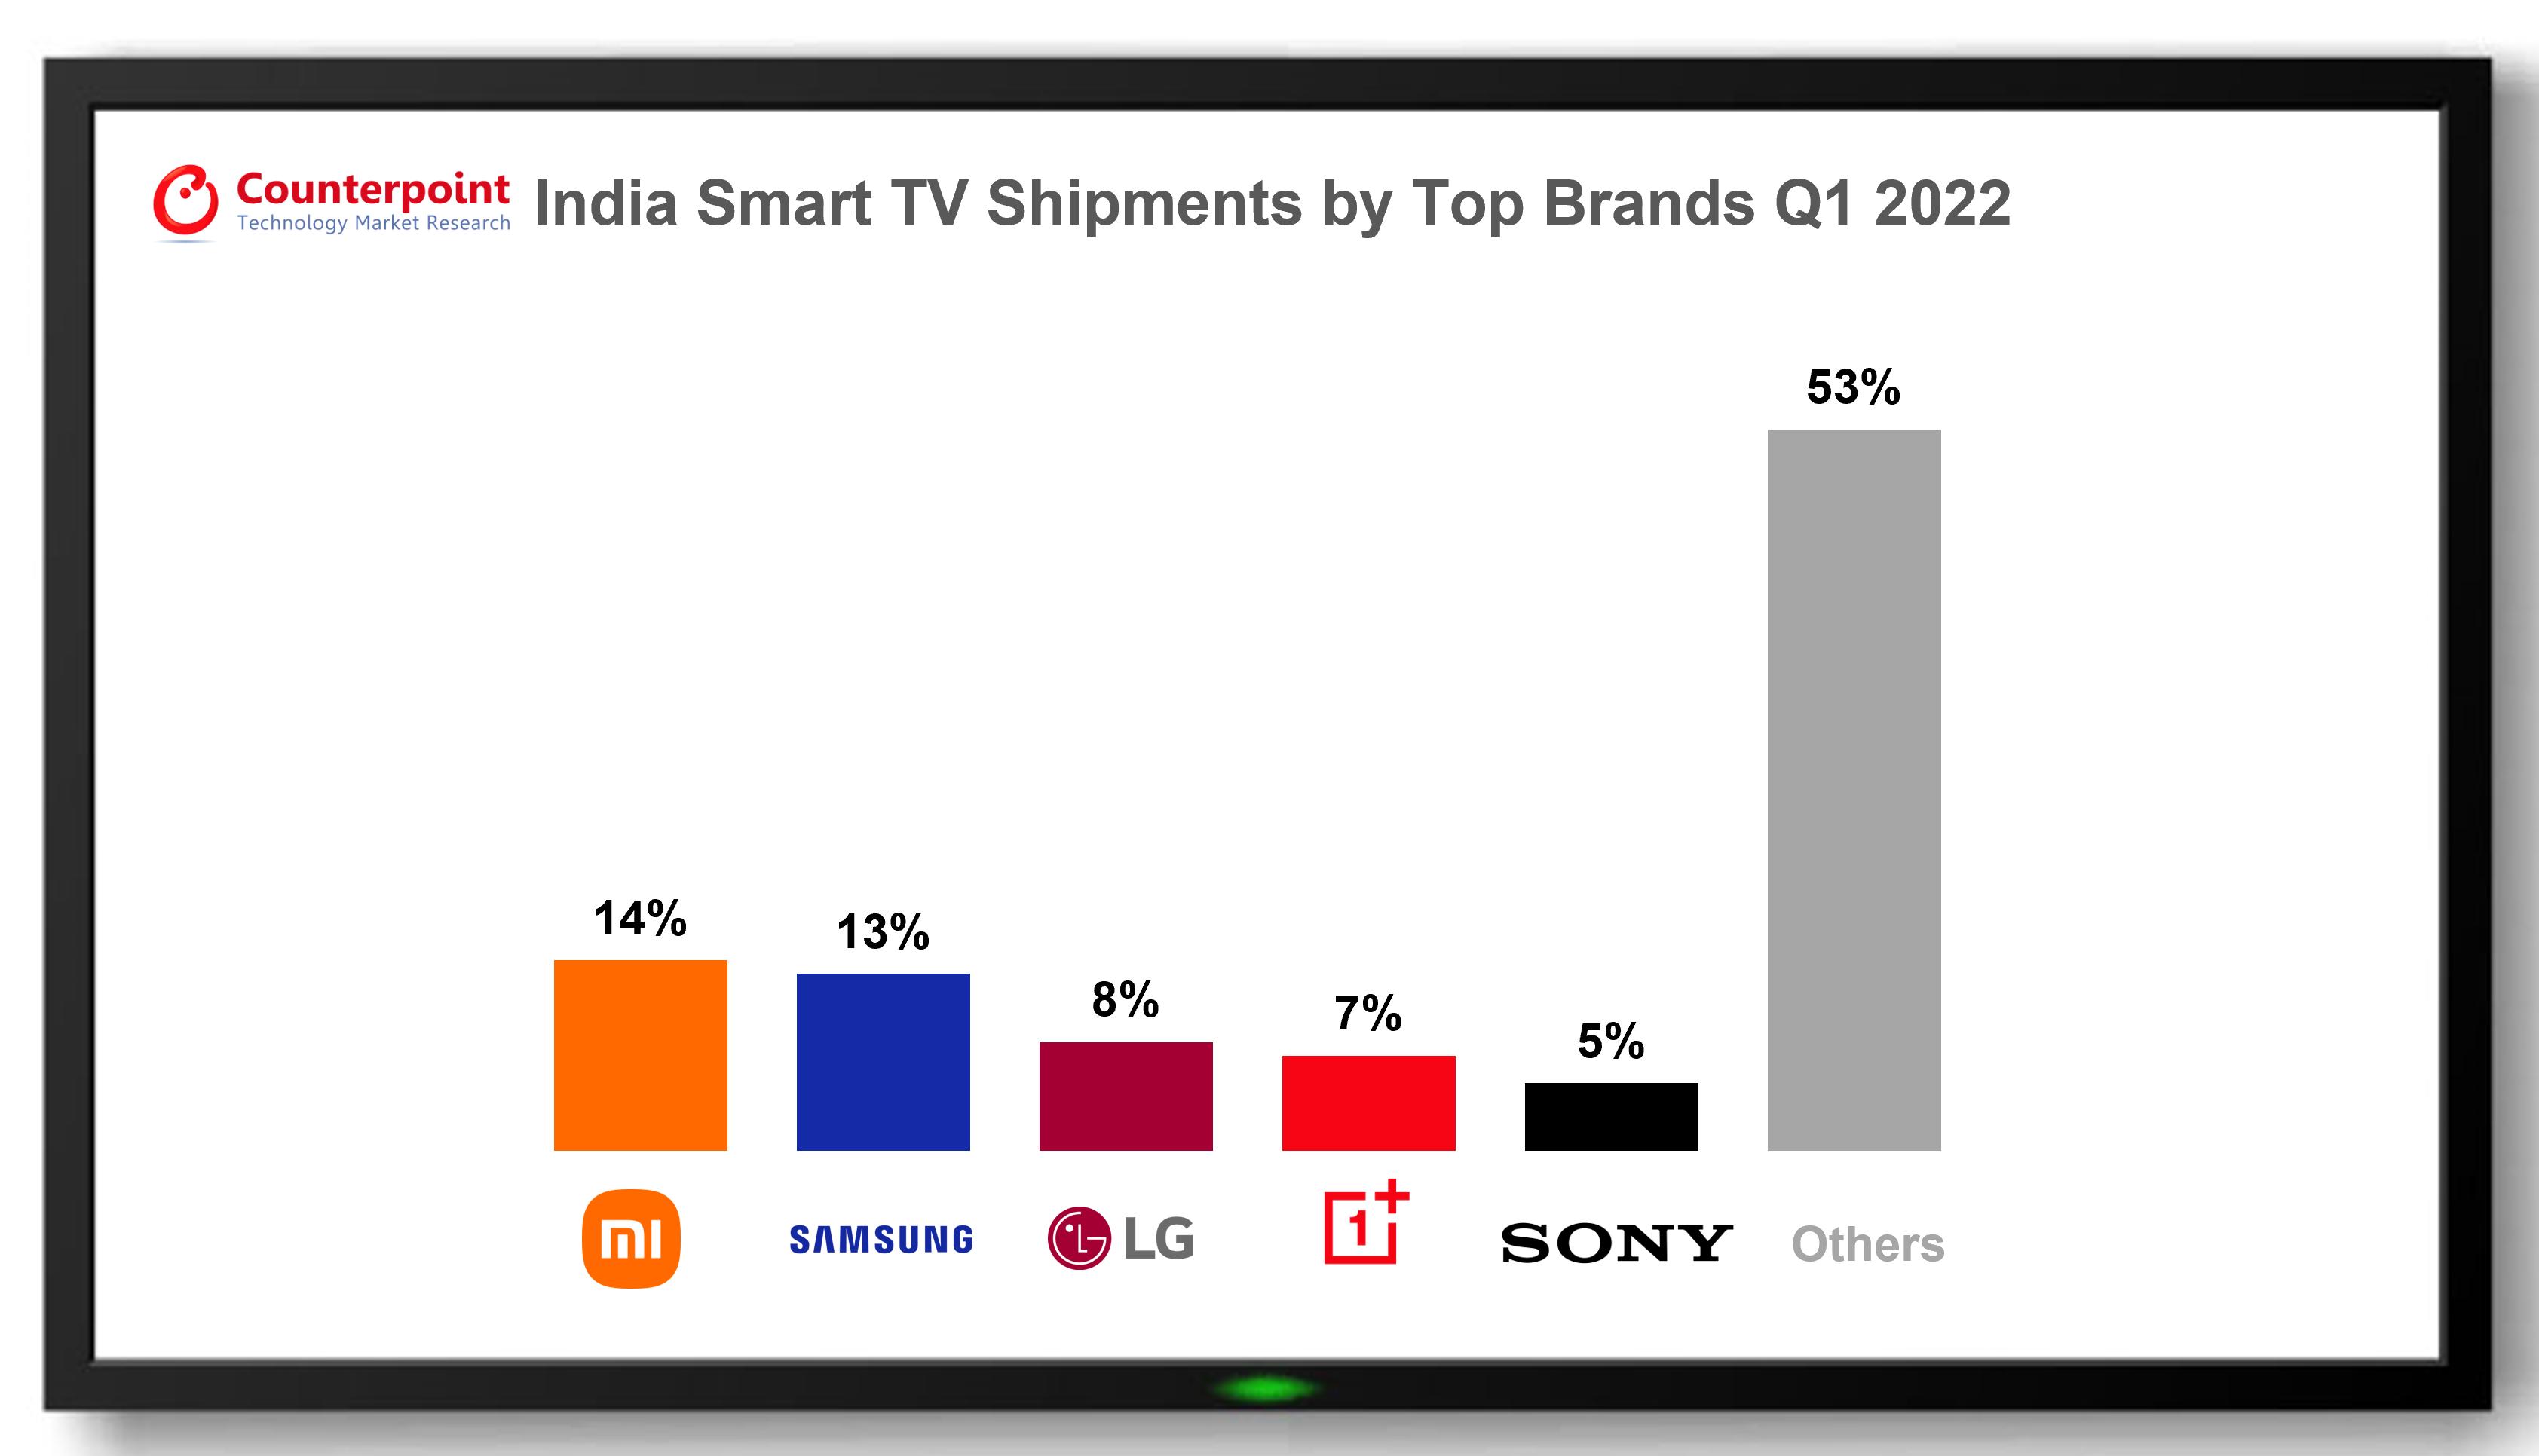 Viedtelevīzijas daļa Indijas TV tirgū 2022. gada pirmajā ceturksnī sasniedza rekordaugstu 89%.